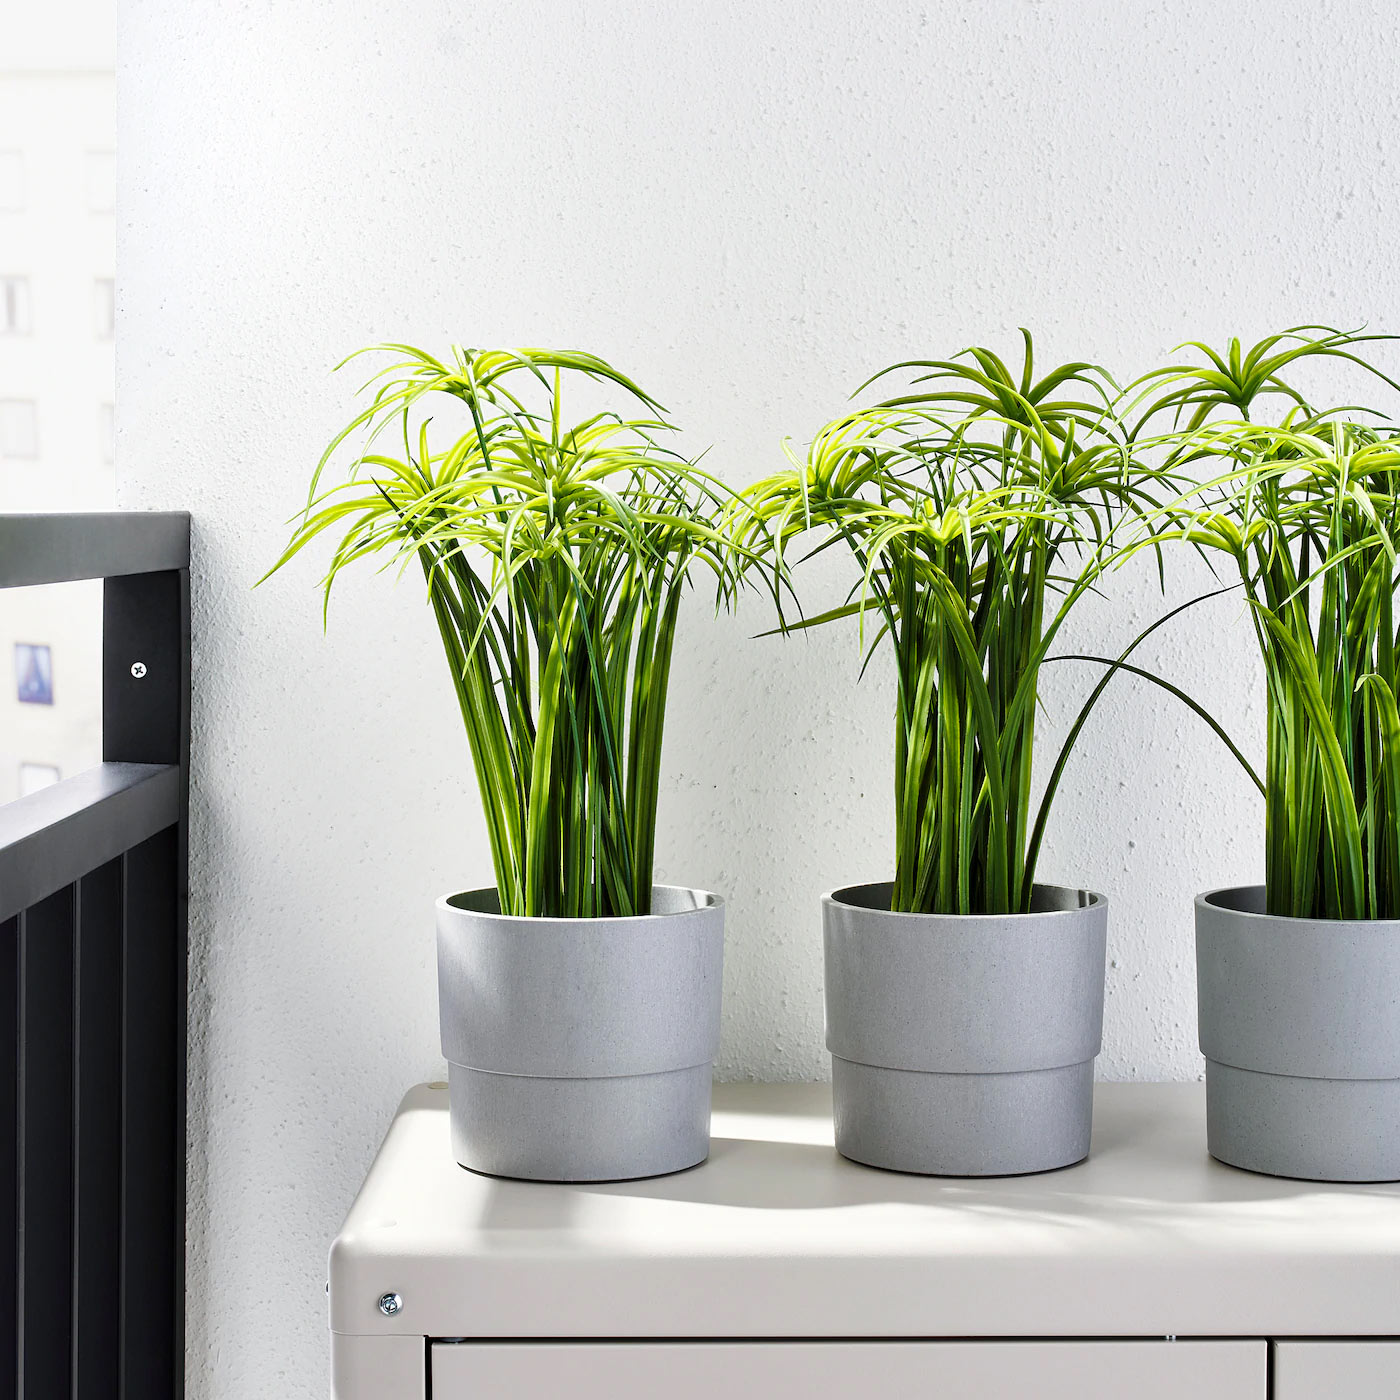 Plantes artificielles IKEA! Si vous n'avez pas la main verte...  inspirez-vous